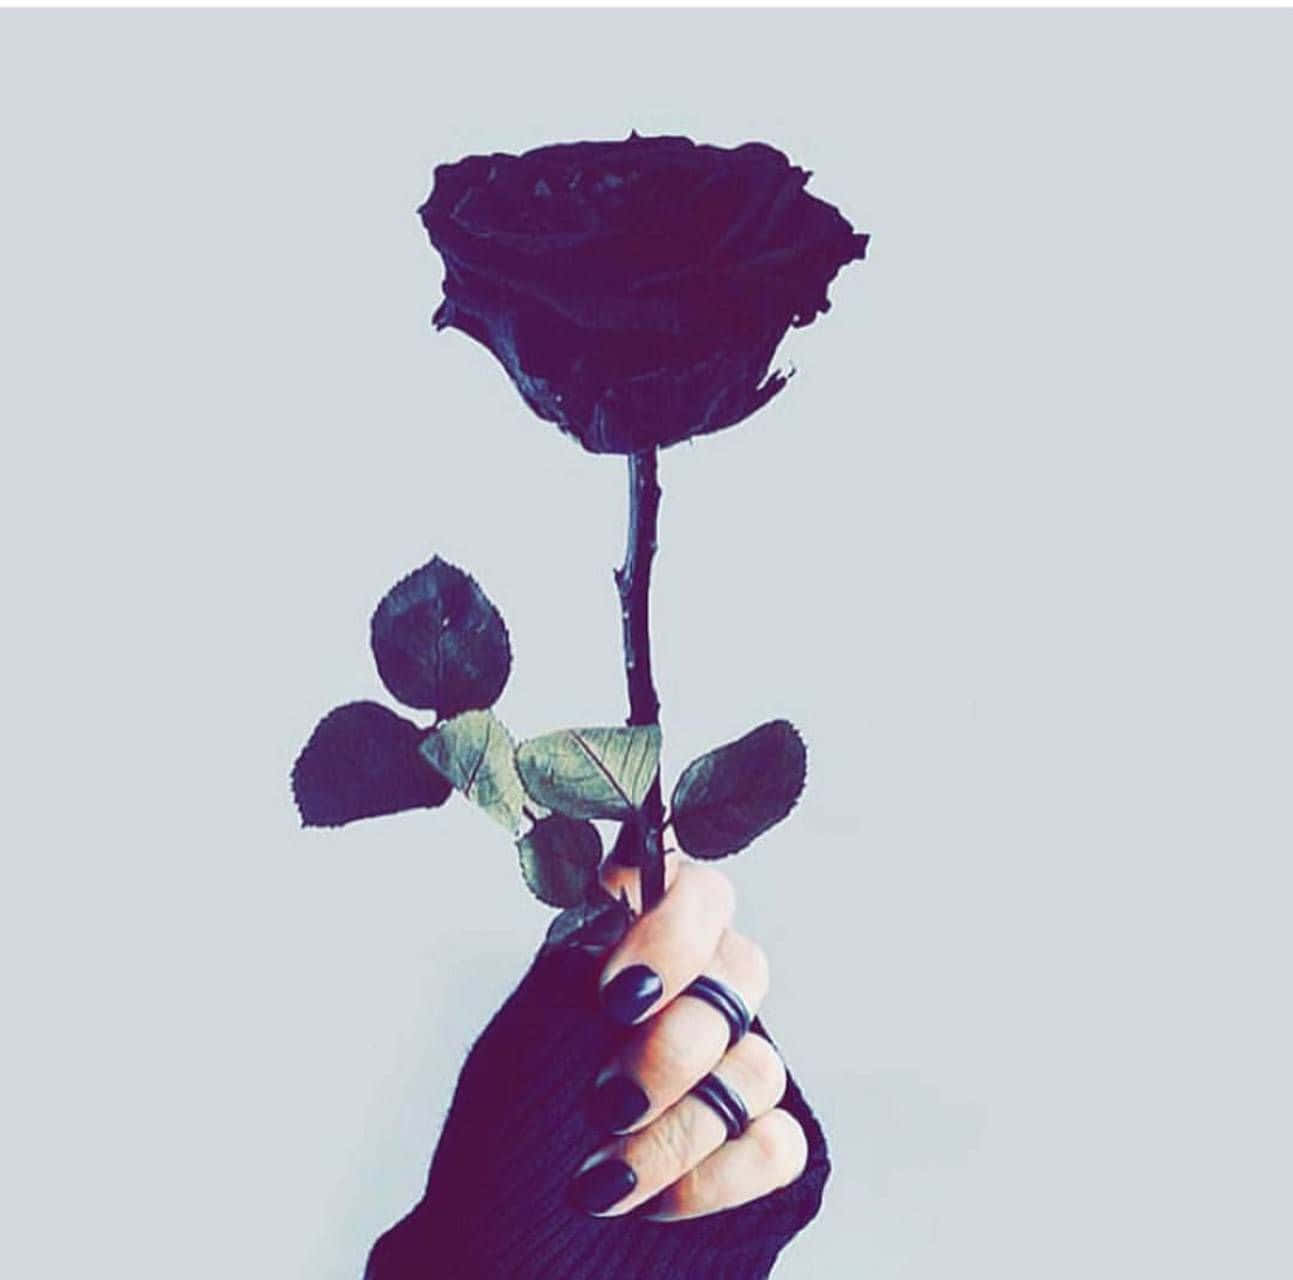 Eineeinzelne Dunkelrote Rose Auf Einem Weichen Schwarzen Hintergrund Wallpaper